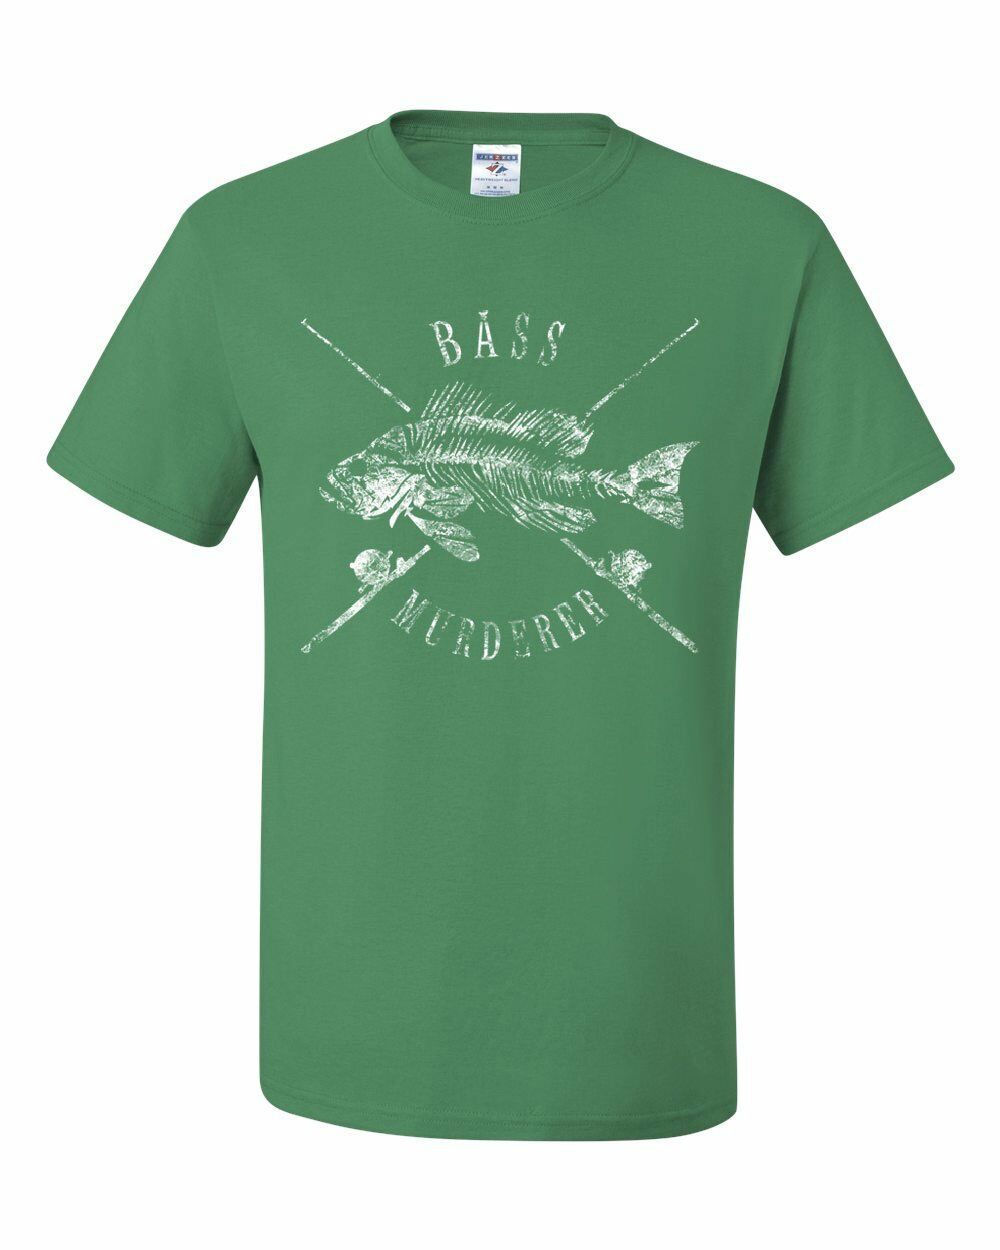 Bass Murderer T-Shirt Funny Mass Murderer Parody Fishing Tee Shirt - T ...